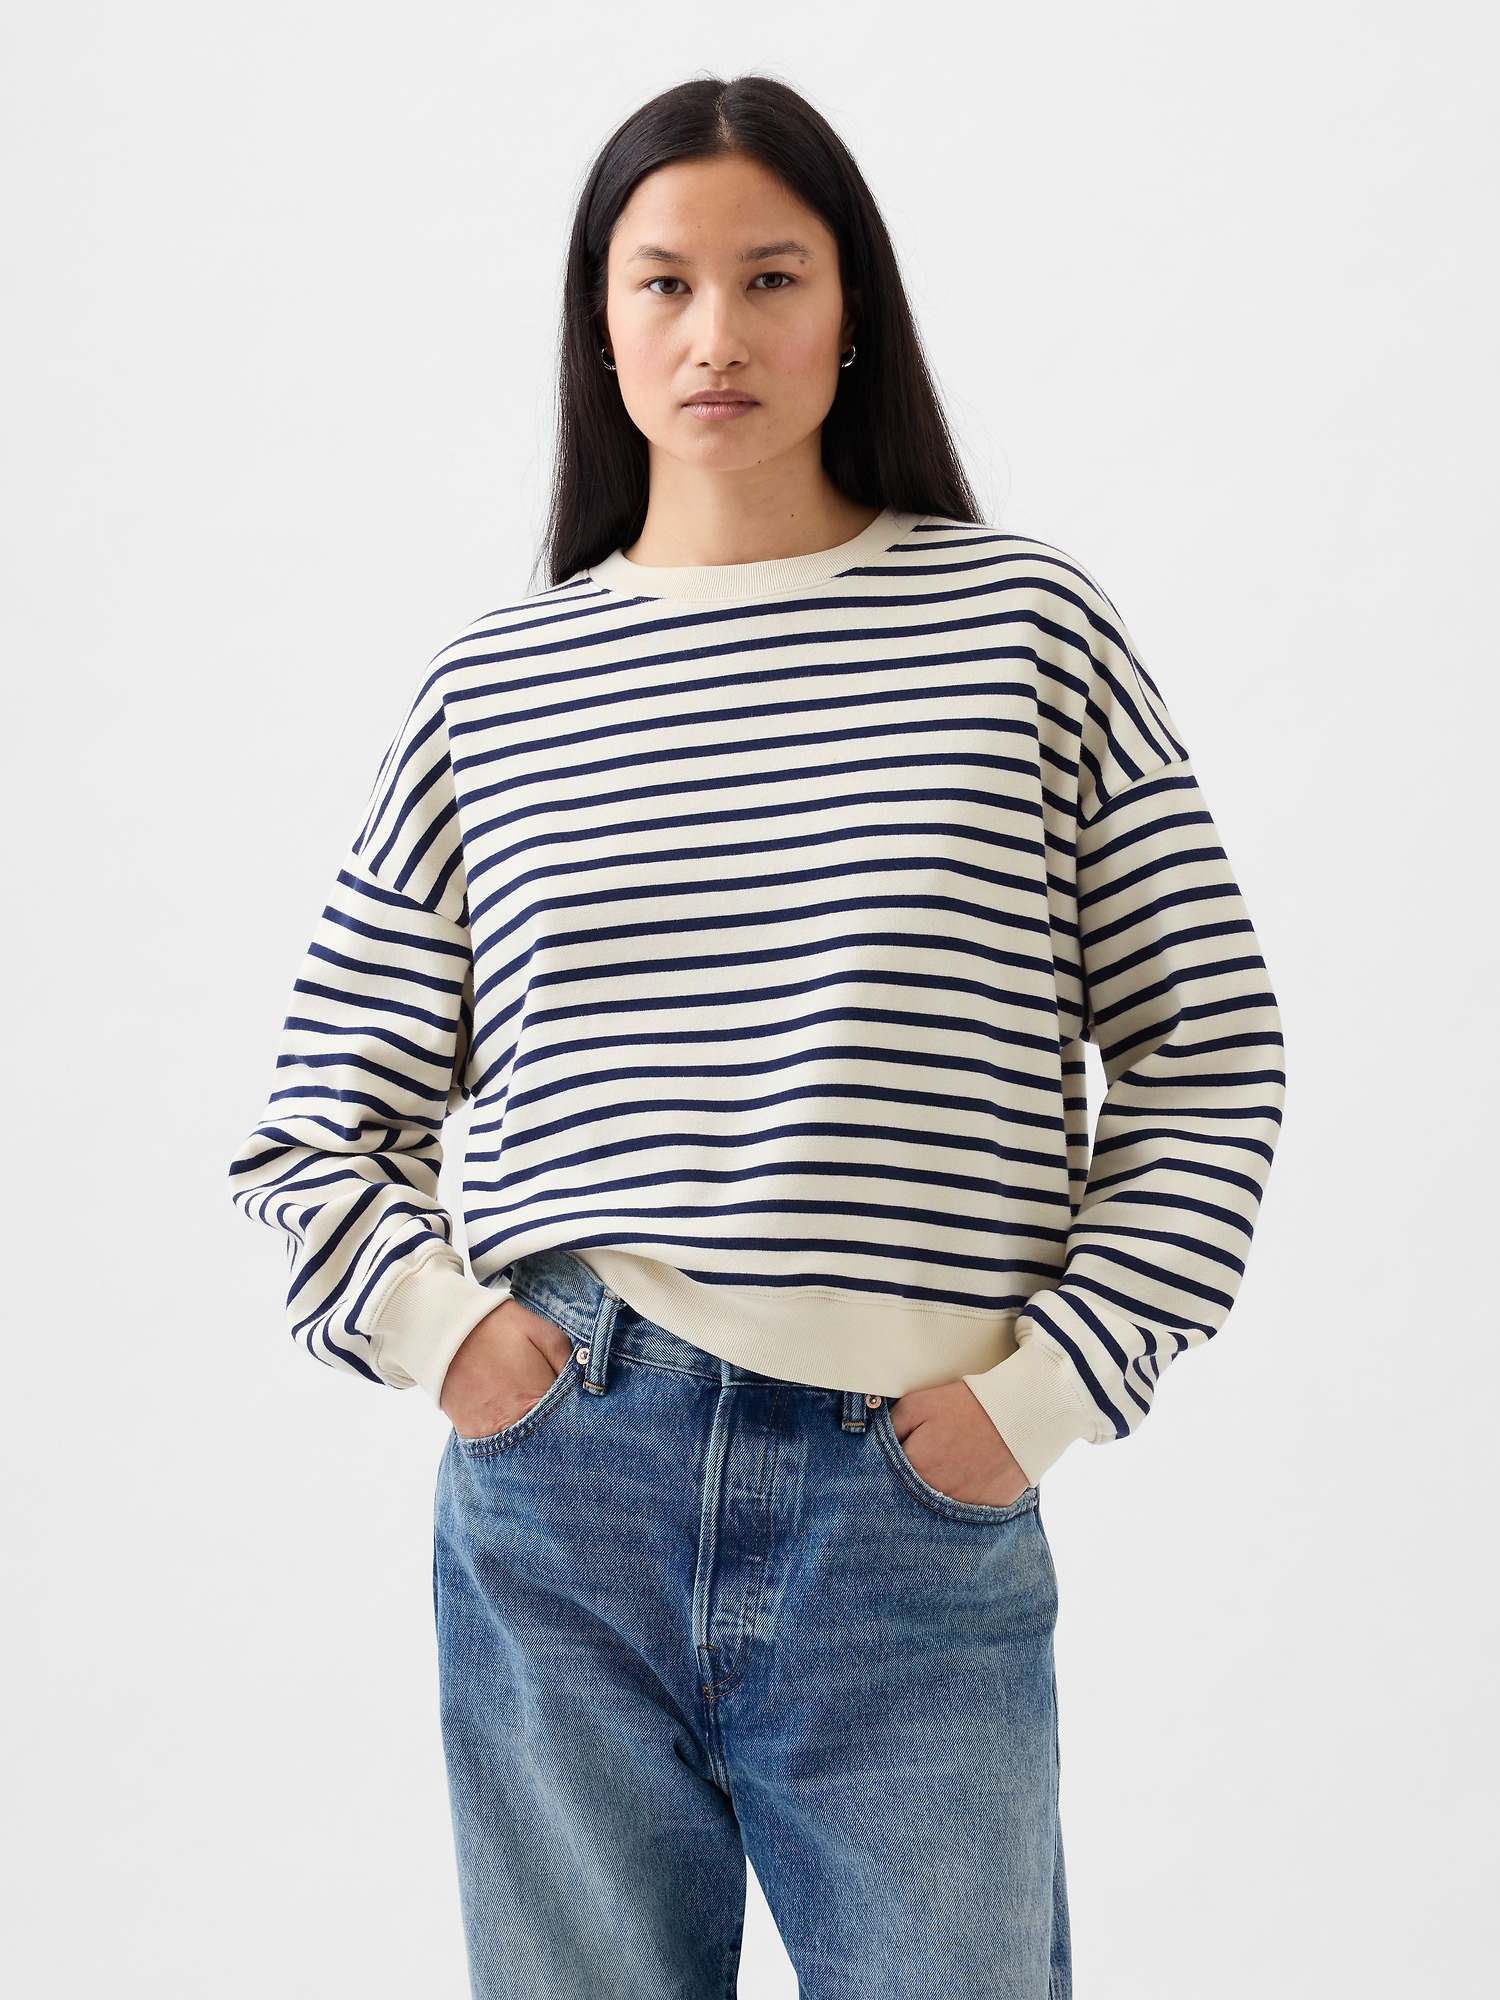 Gap Vintage Soft Wedge Crewneck Sweatshirt In Navy Blue & White Stripe